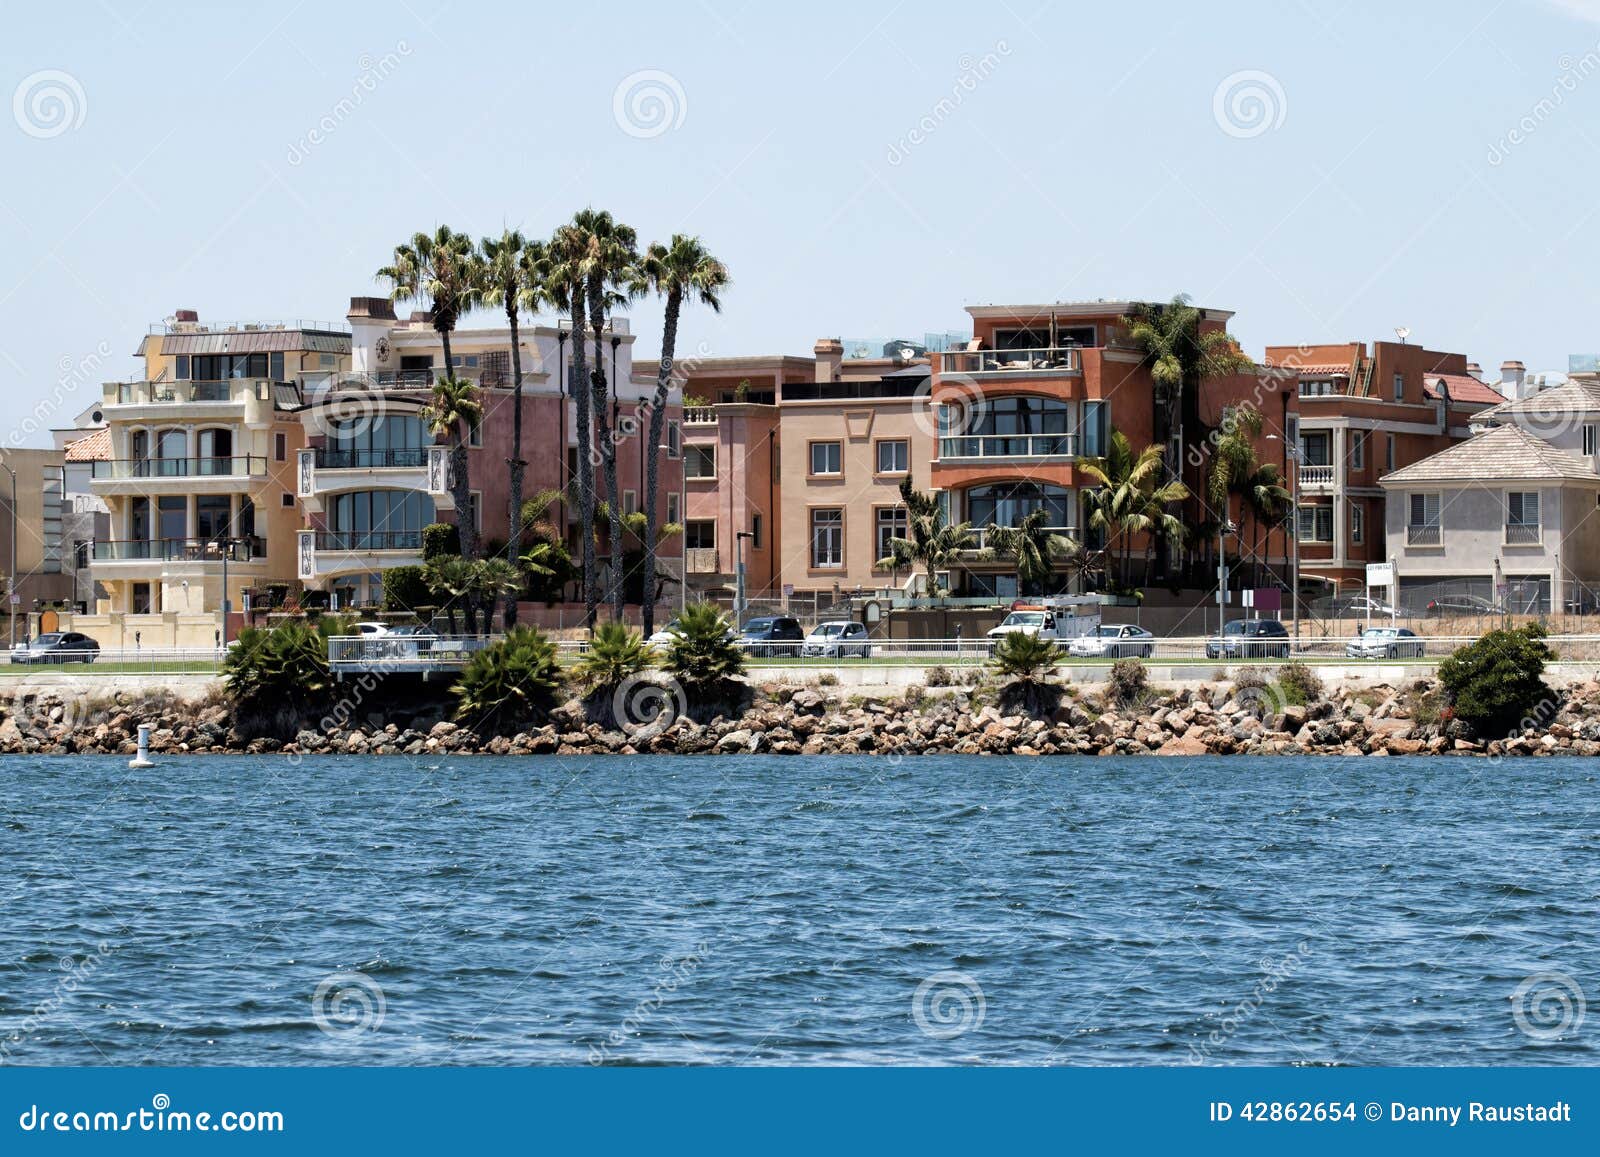 加利福尼亚海滨别墅图片